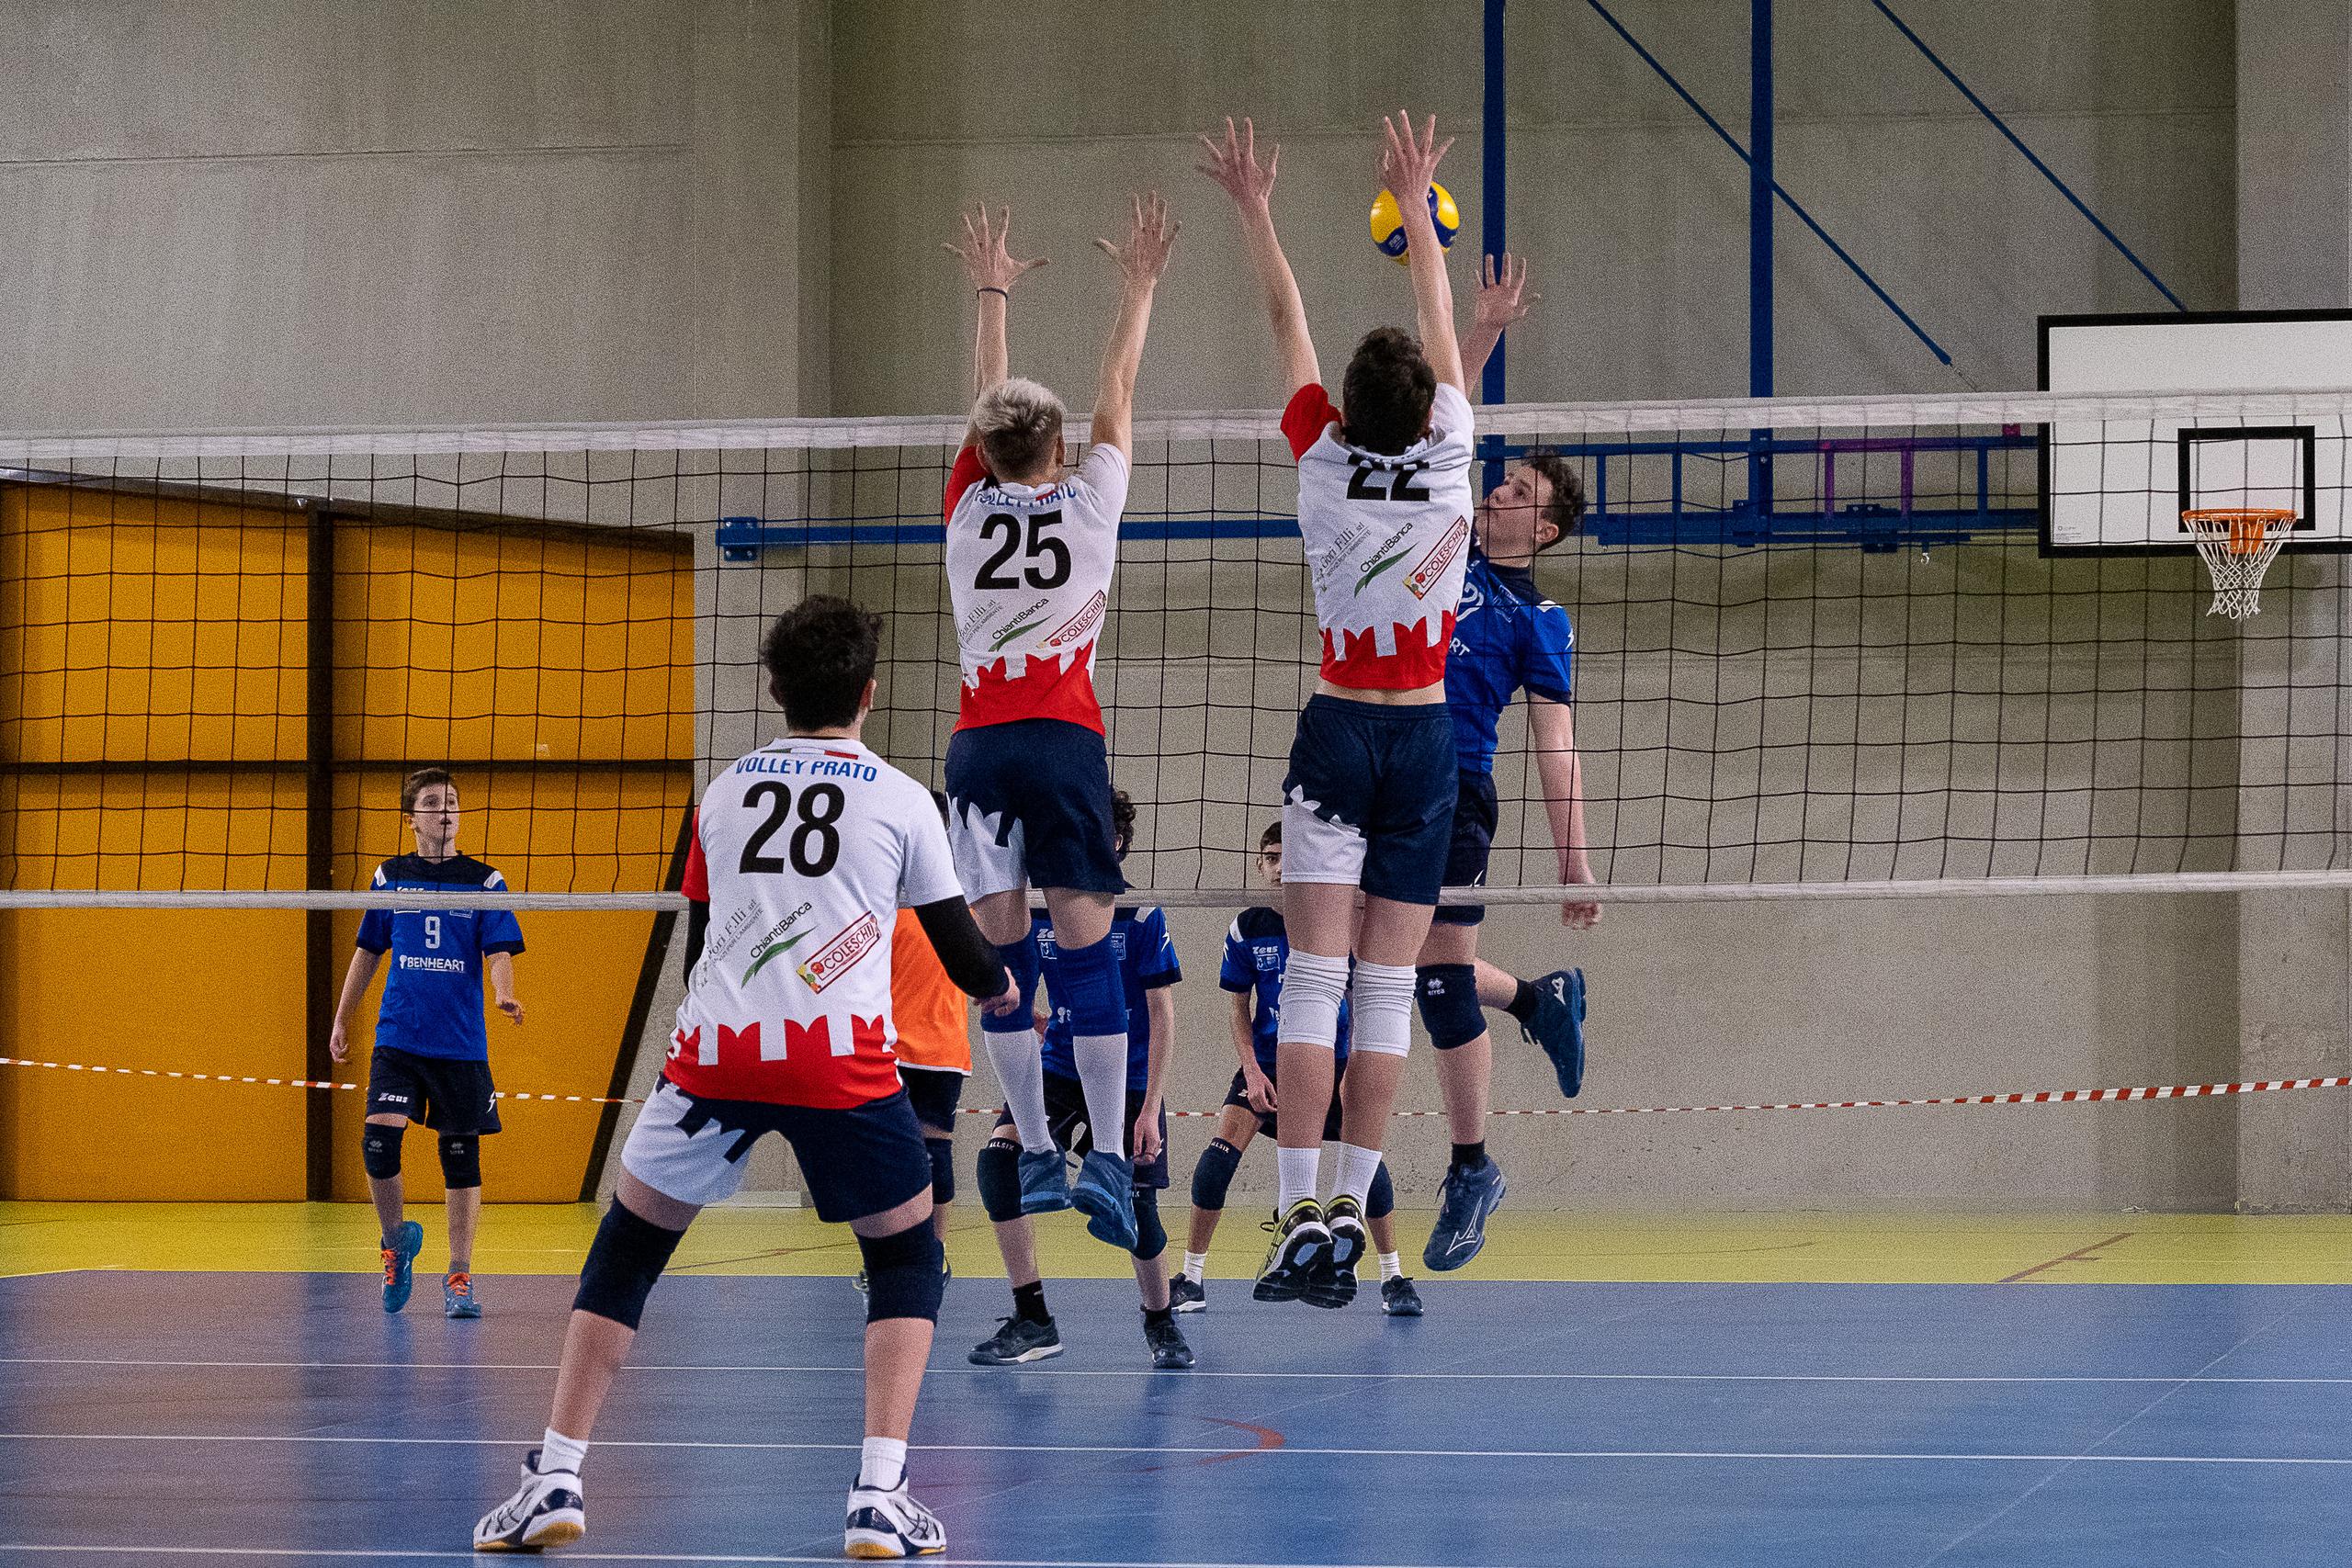 Play Off Under 15: Volley Prato Senior stacca il biglietto per la finale provinciale